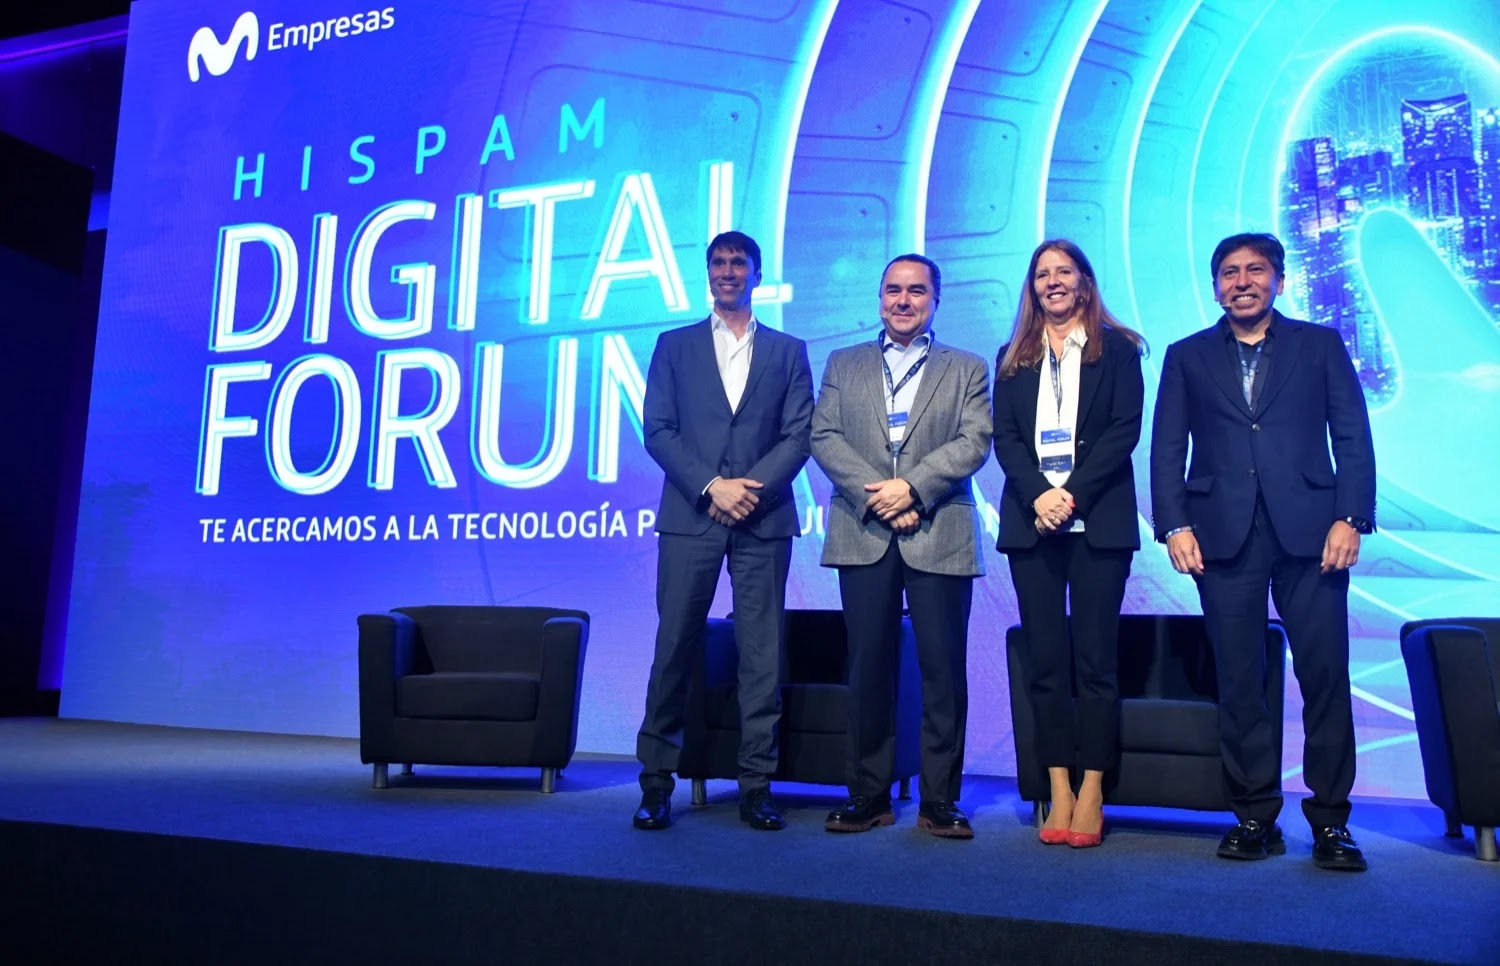 Hispam Digital Forum: Transformación digital en Perú y la región